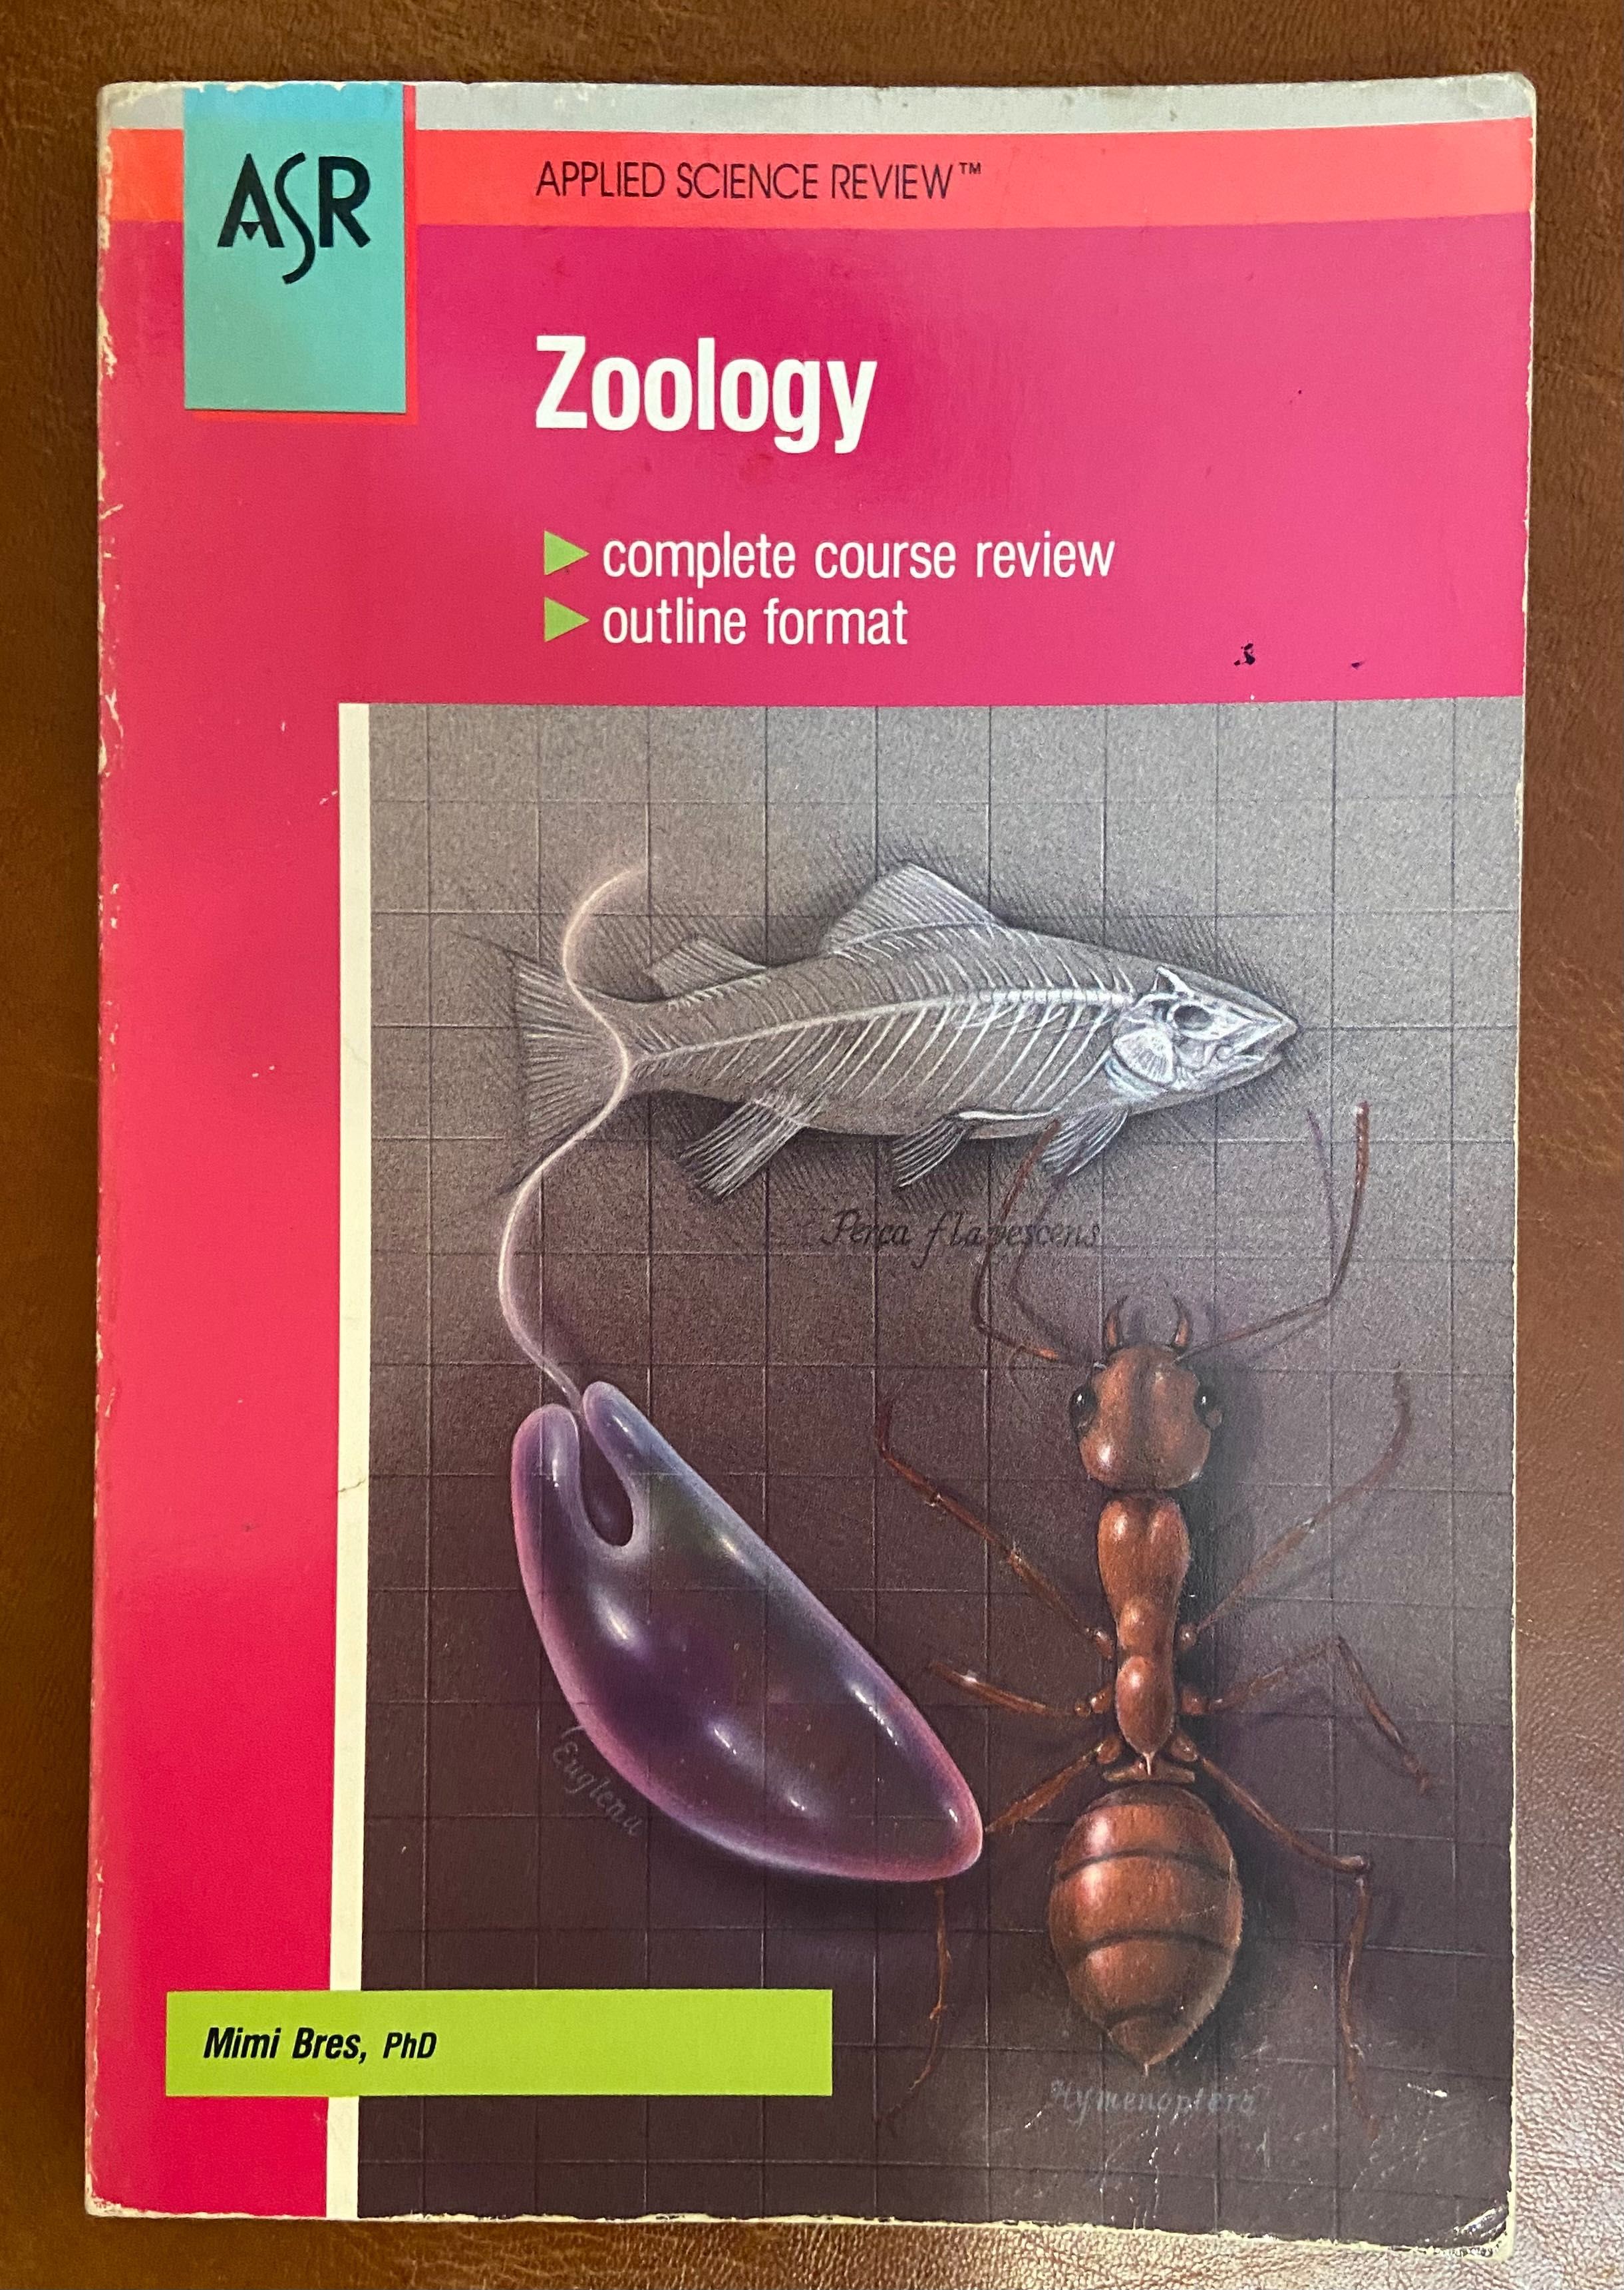 Cărți anatomie umană,medicina si zoologie in limba engleza